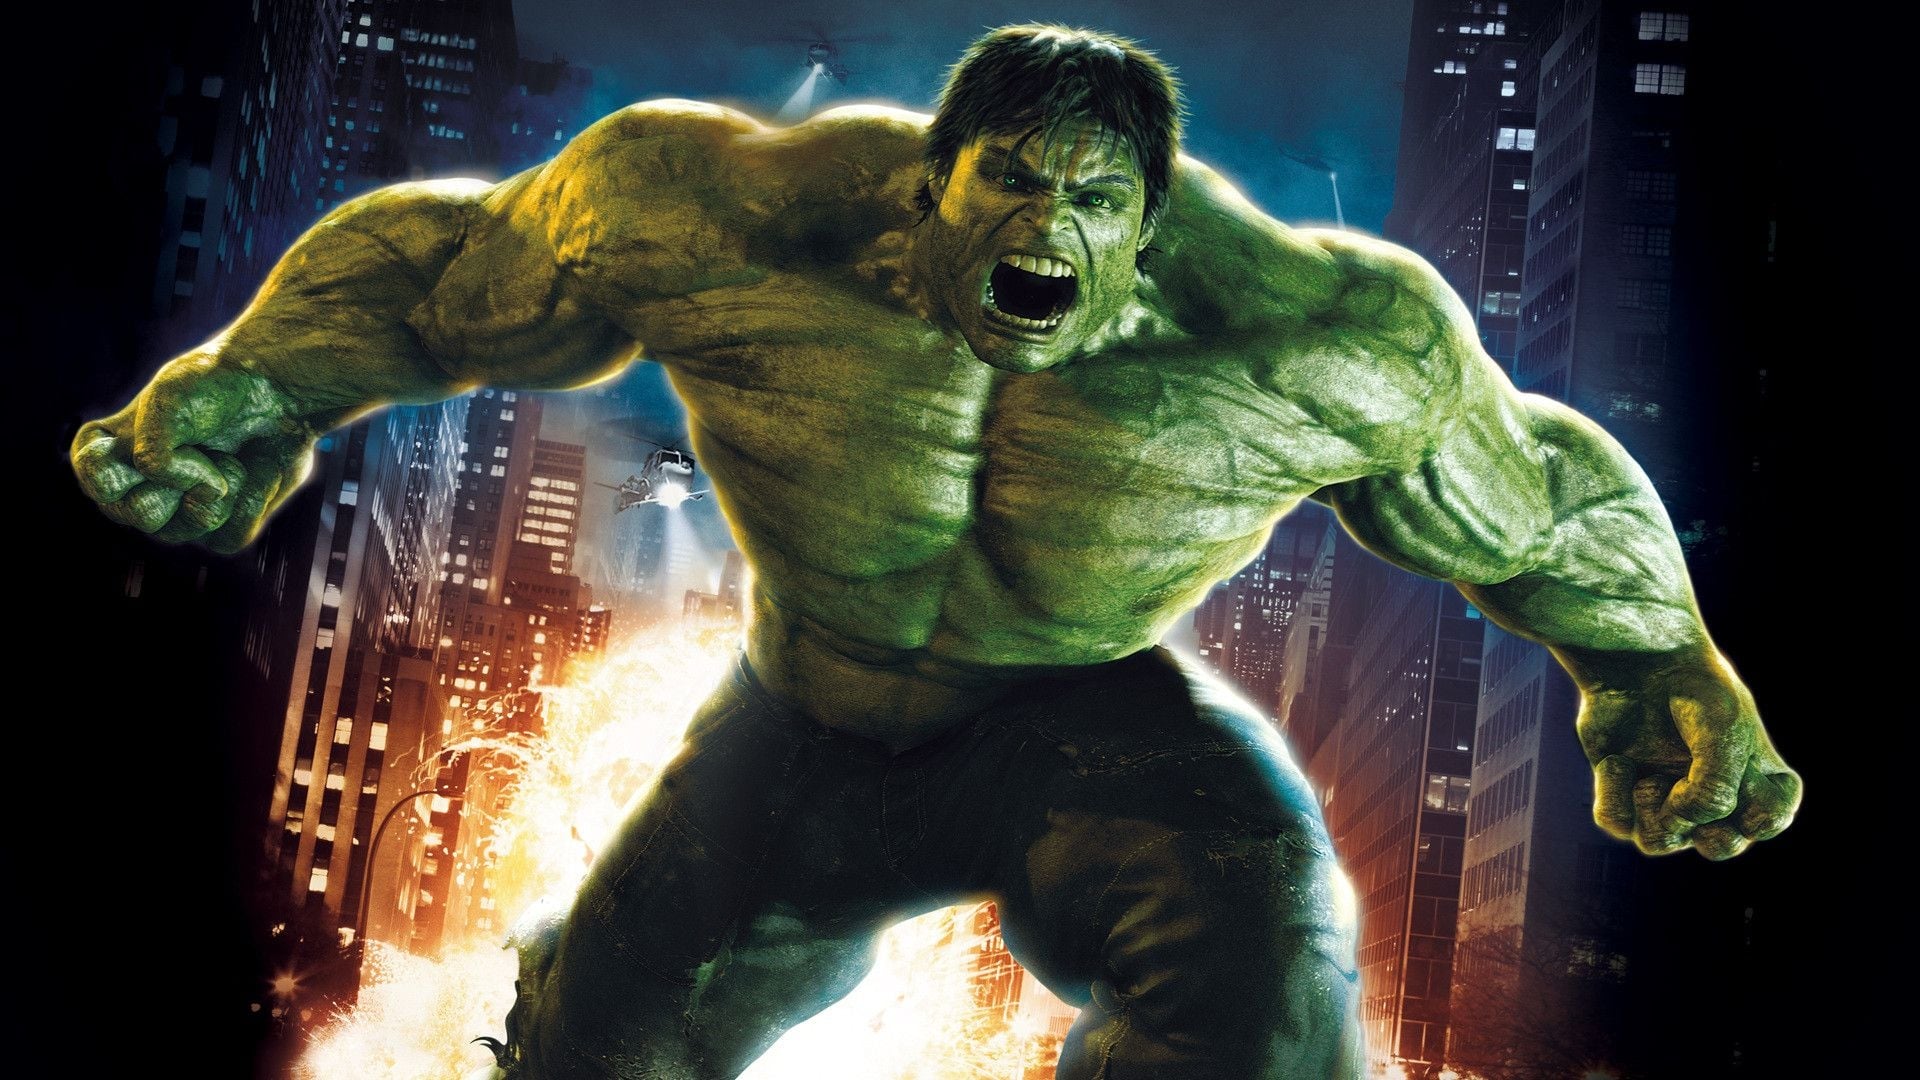 Poster Phim Người Khổng Lồ Xanh Phi Thường (The Incredible Hulk)